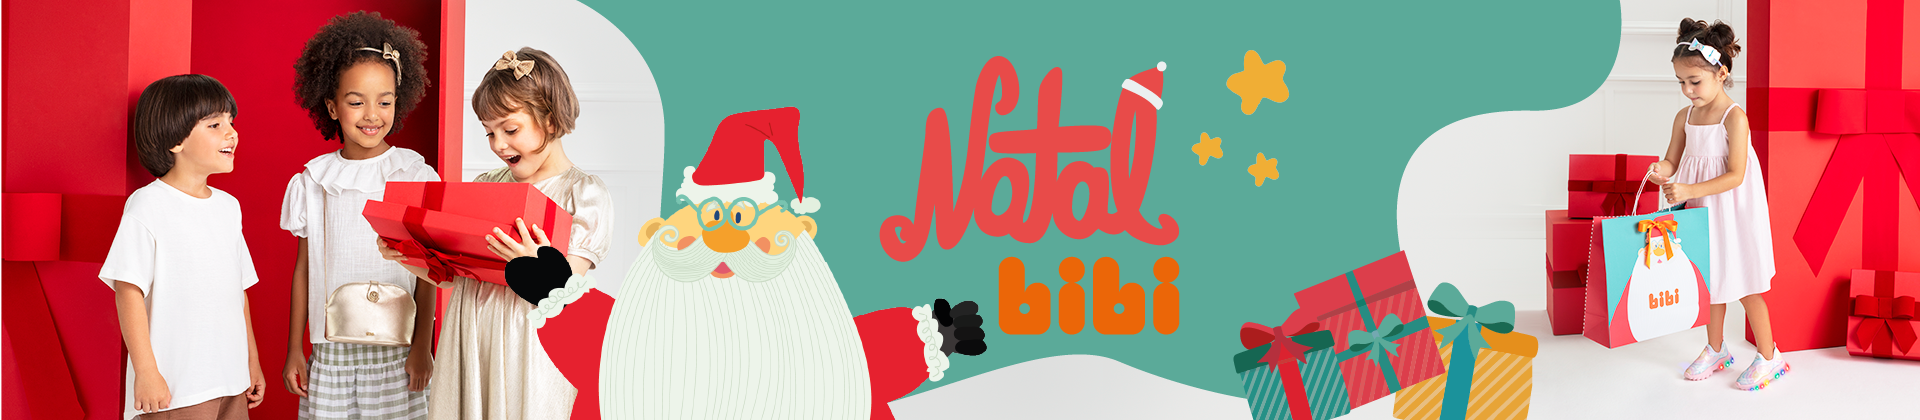 Natal Bibi - Banner